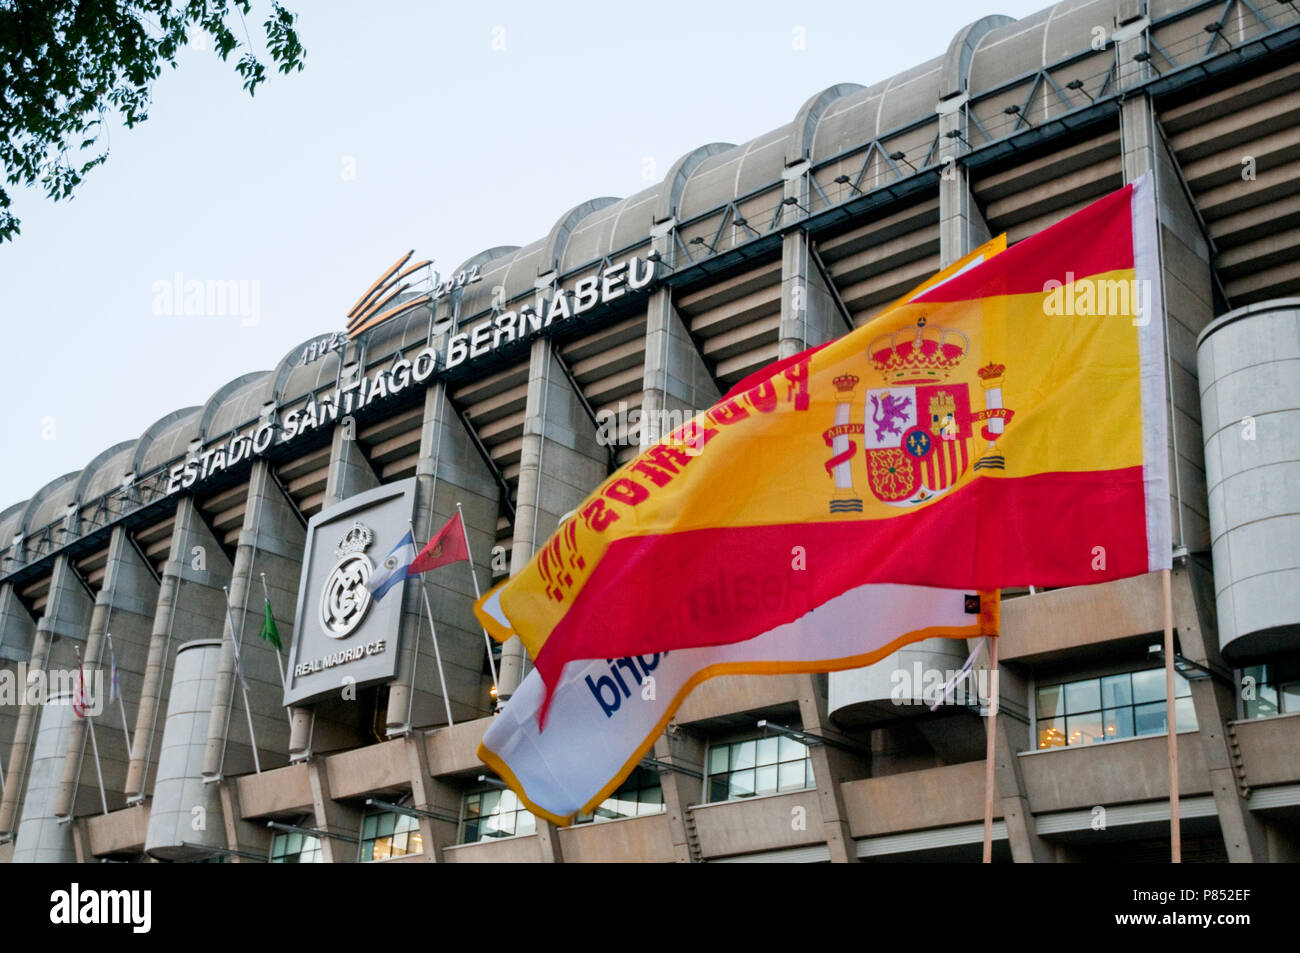 Façade du stade Santiago Bernabeu. Madrid, Espagne. Banque D'Images